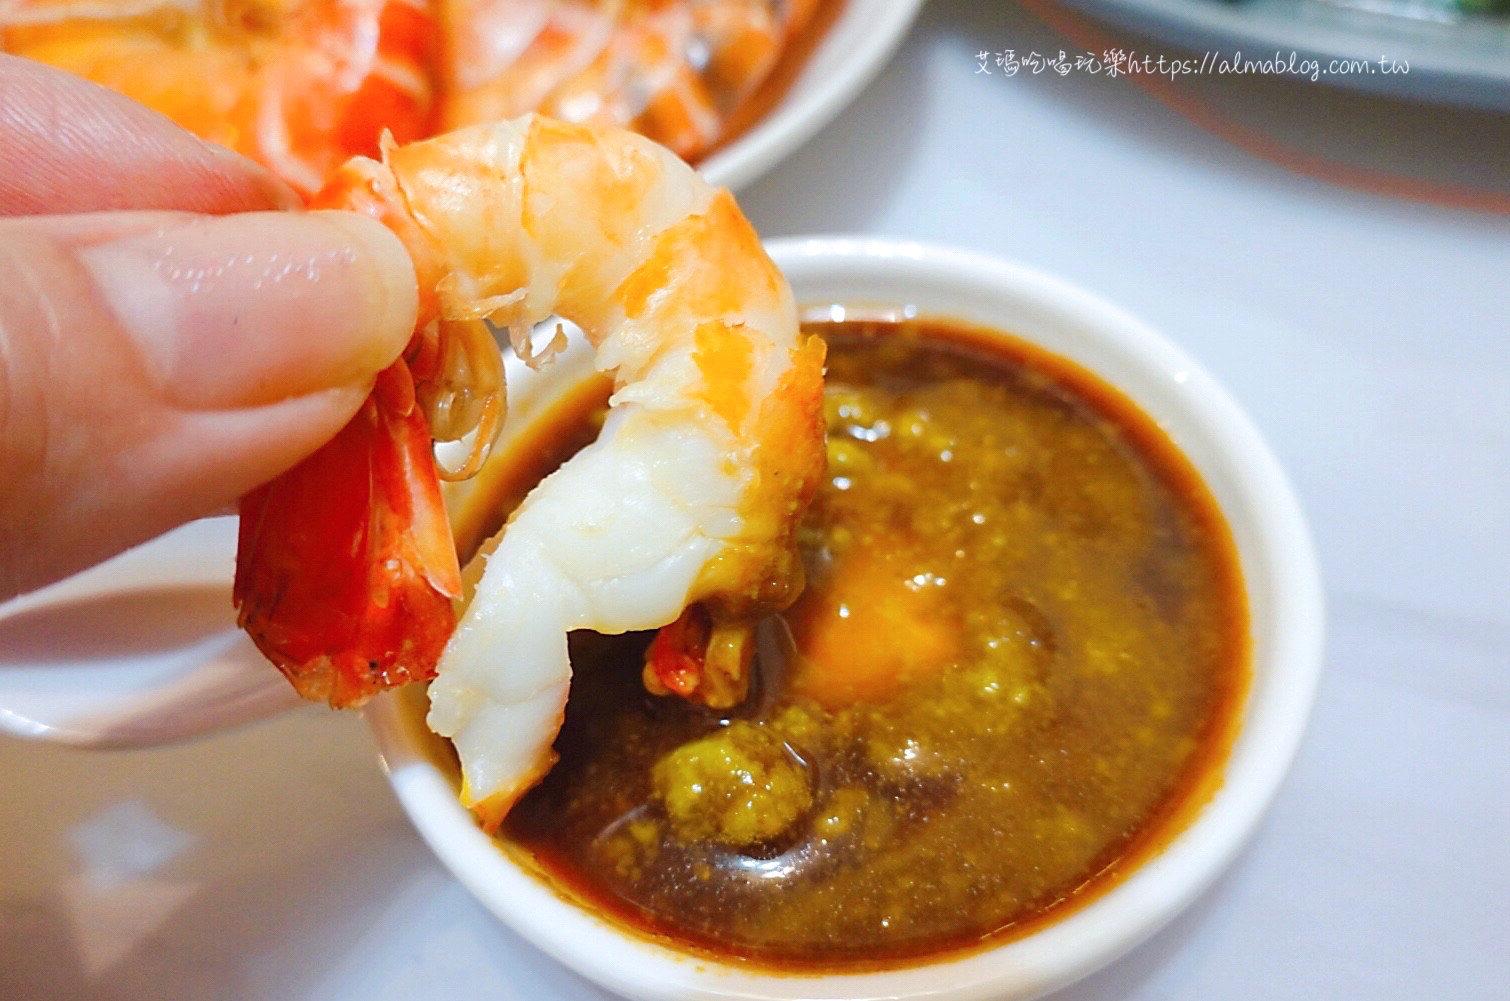 林口美食,泰國蝦吃到飽,泰蝦,泰蝦PA 水道泰國蝦吃到飽,泰蝦PA流水蝦餐廳